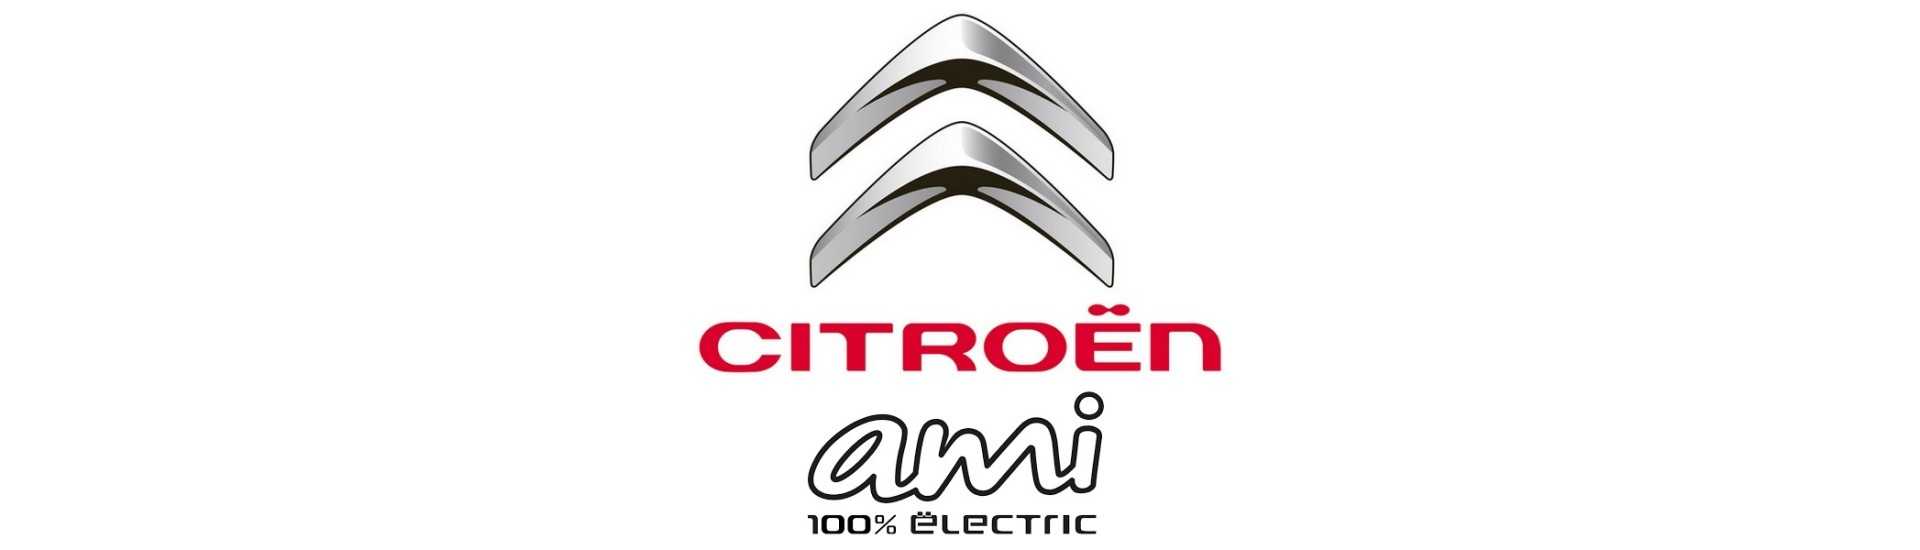 Logo et adhésif au meilleur prix pour voiture sans permis Citroën